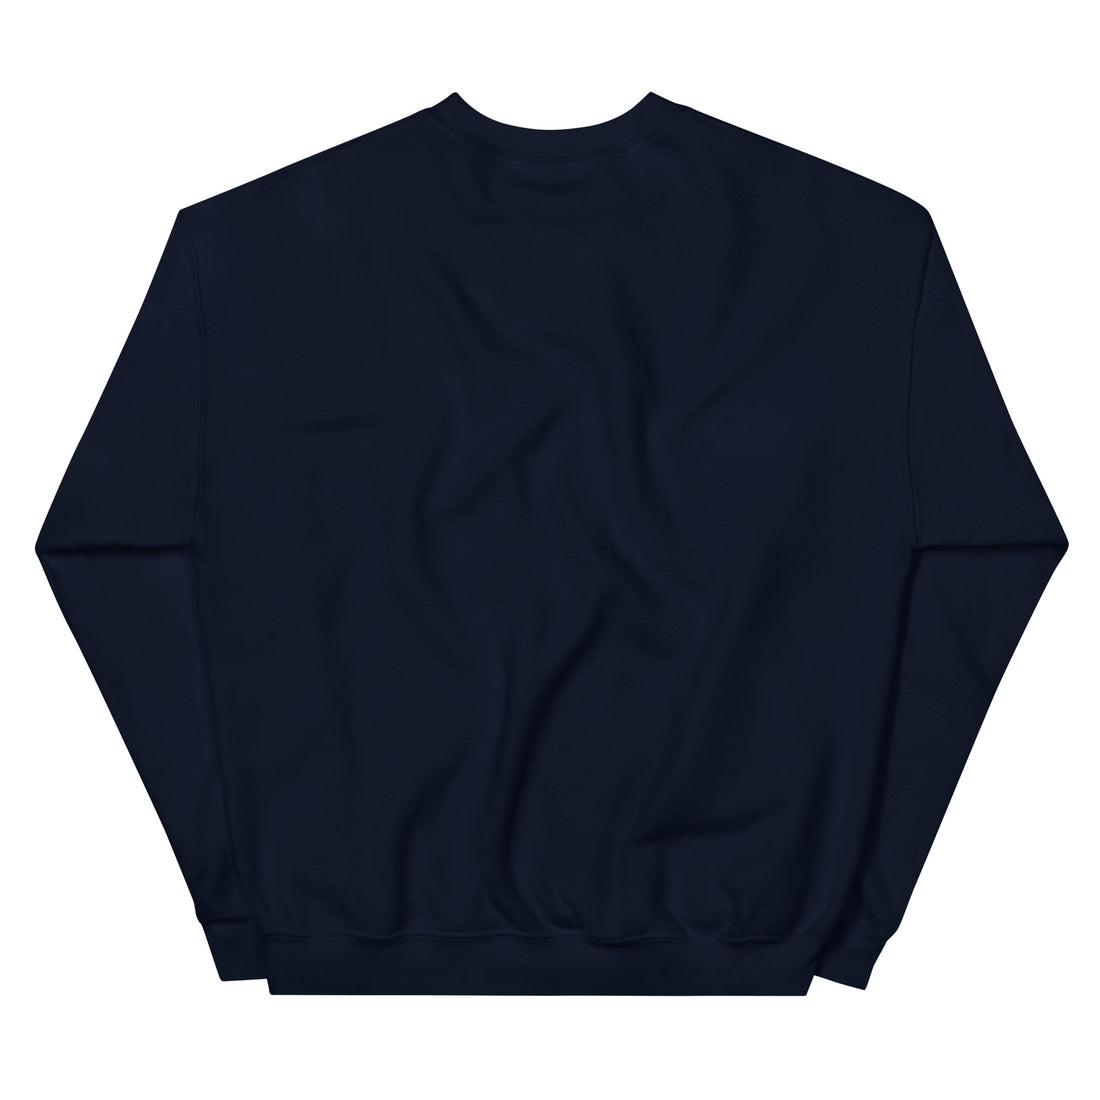 Riiink STL – Sweatshirt